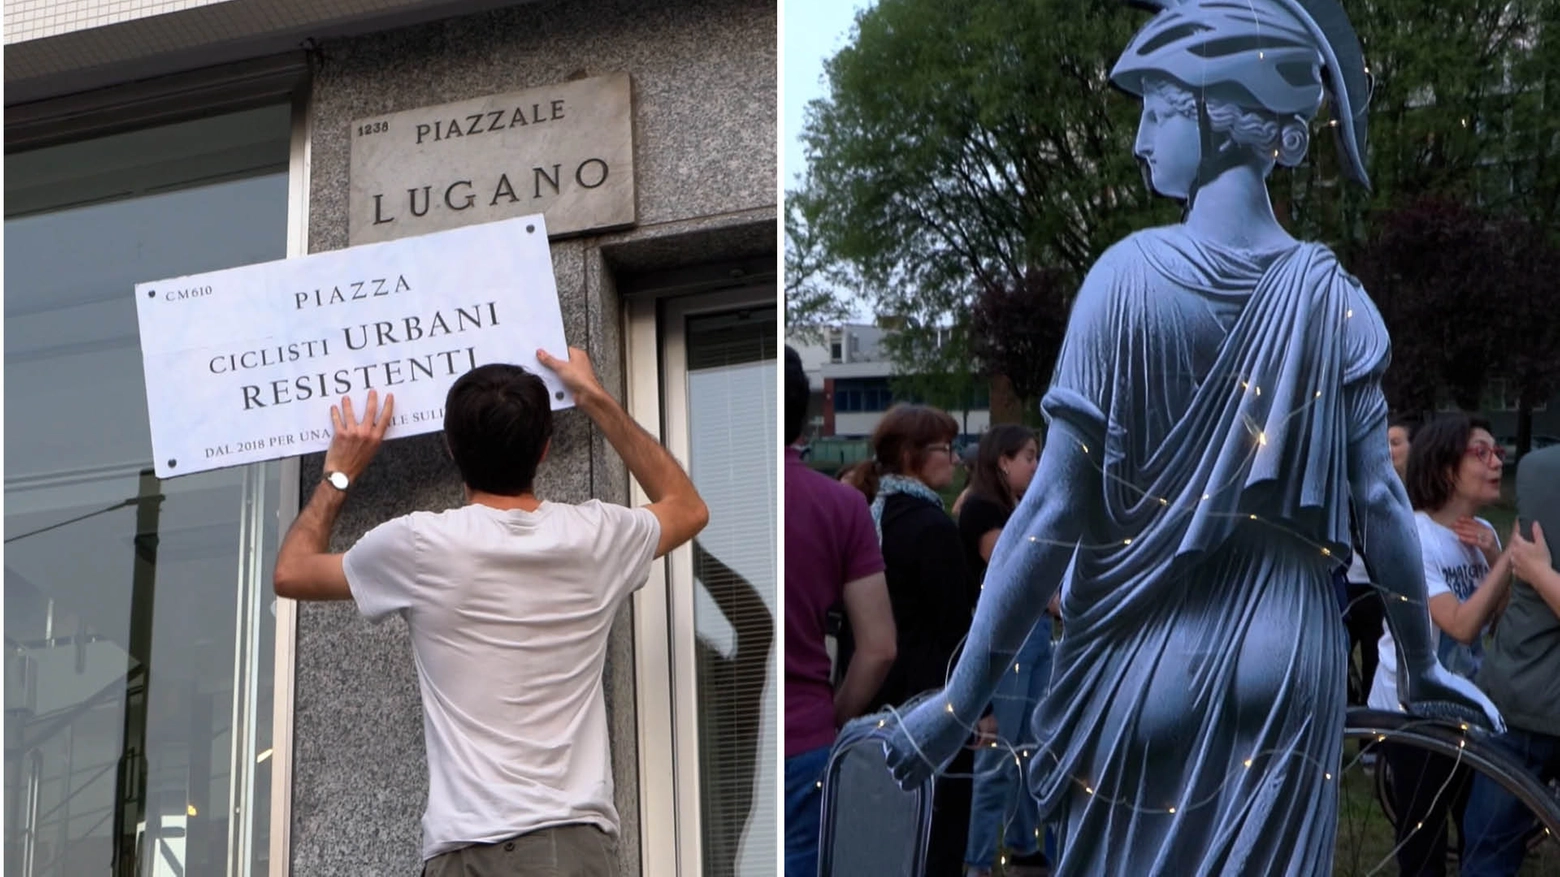 Il momento in cui piazzale Lugano è stato "ribattezzato" e la statua per i ciclisti nel parco adiacente al ponte